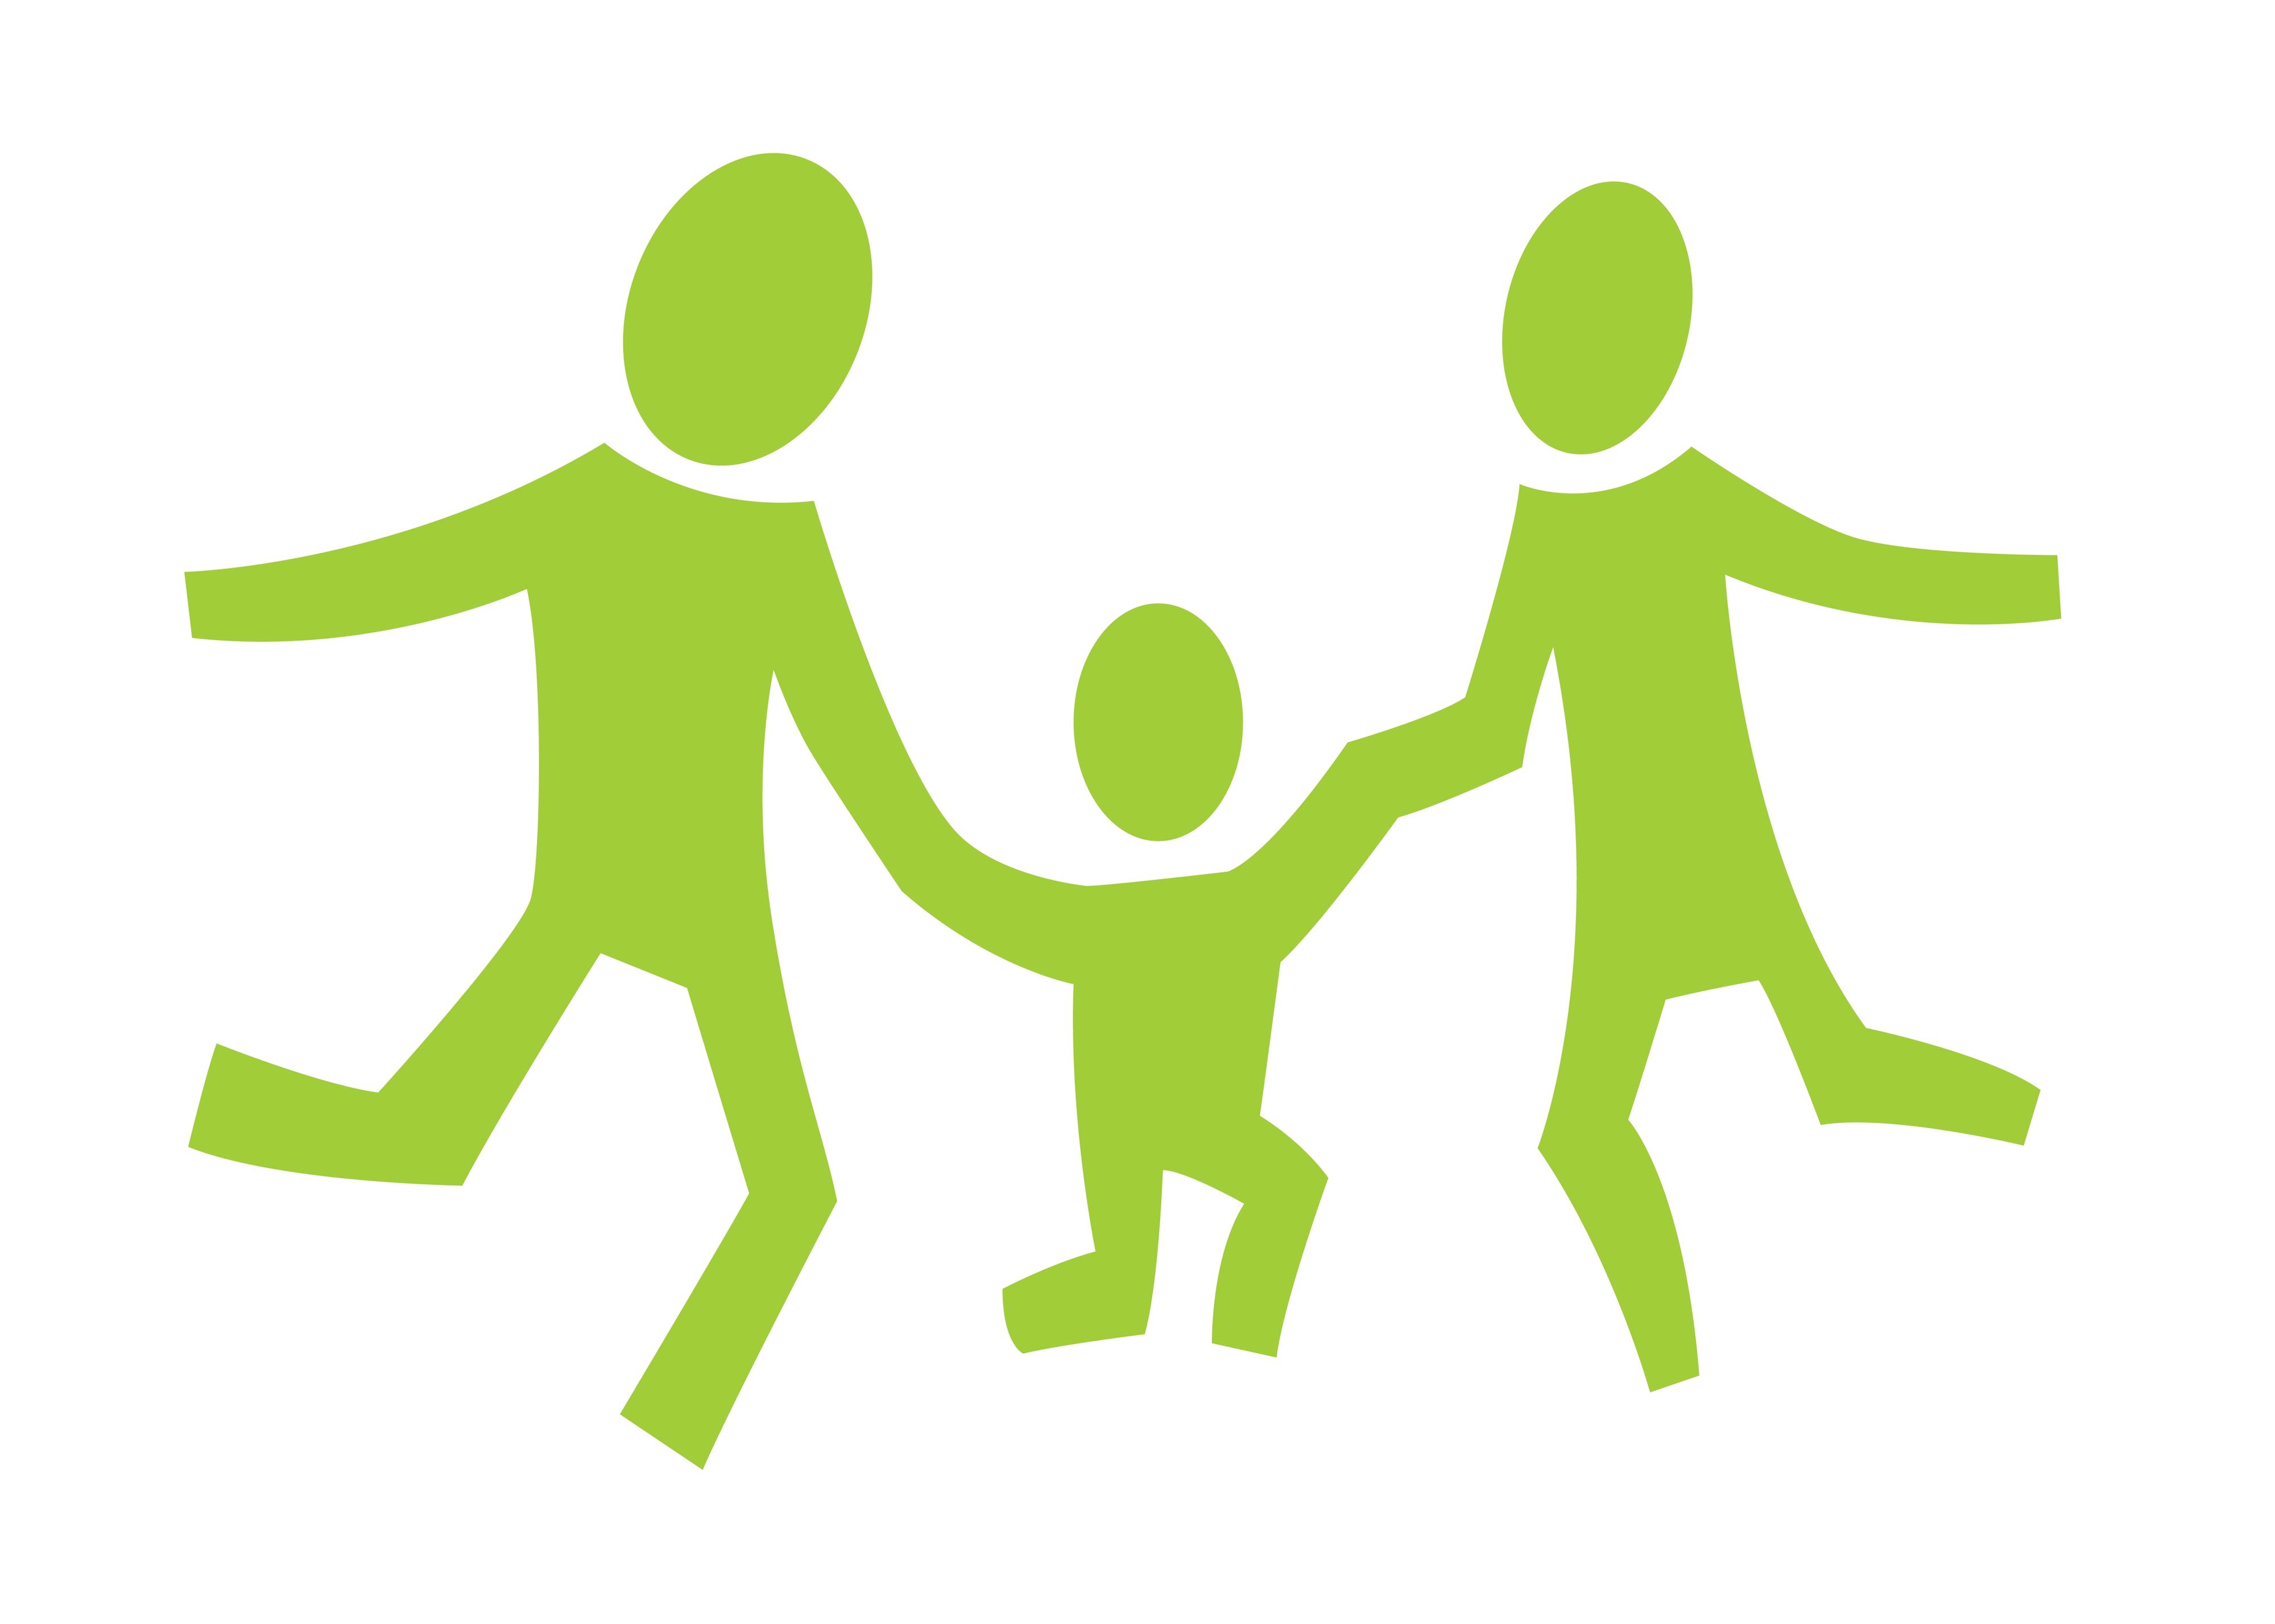 grün gezeichnete dreiköpfige Familie, stilisierte Darstellung